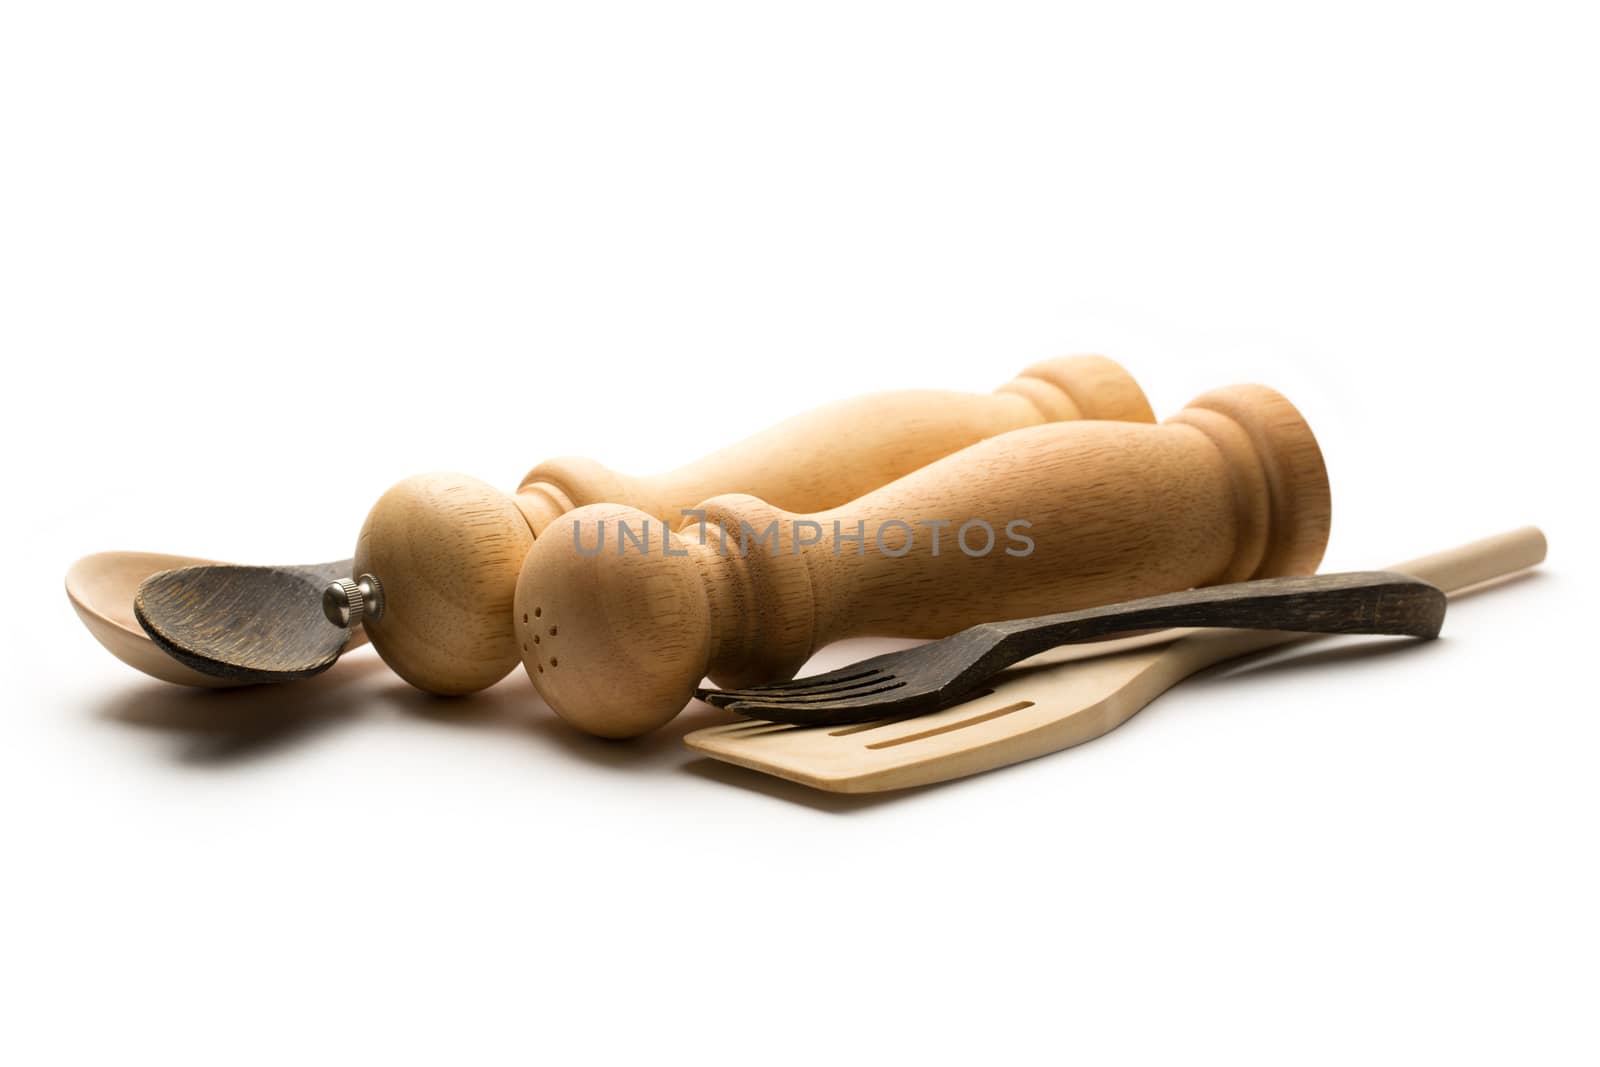 Wooden salt and pepper set with kitchen utensils by Garsya